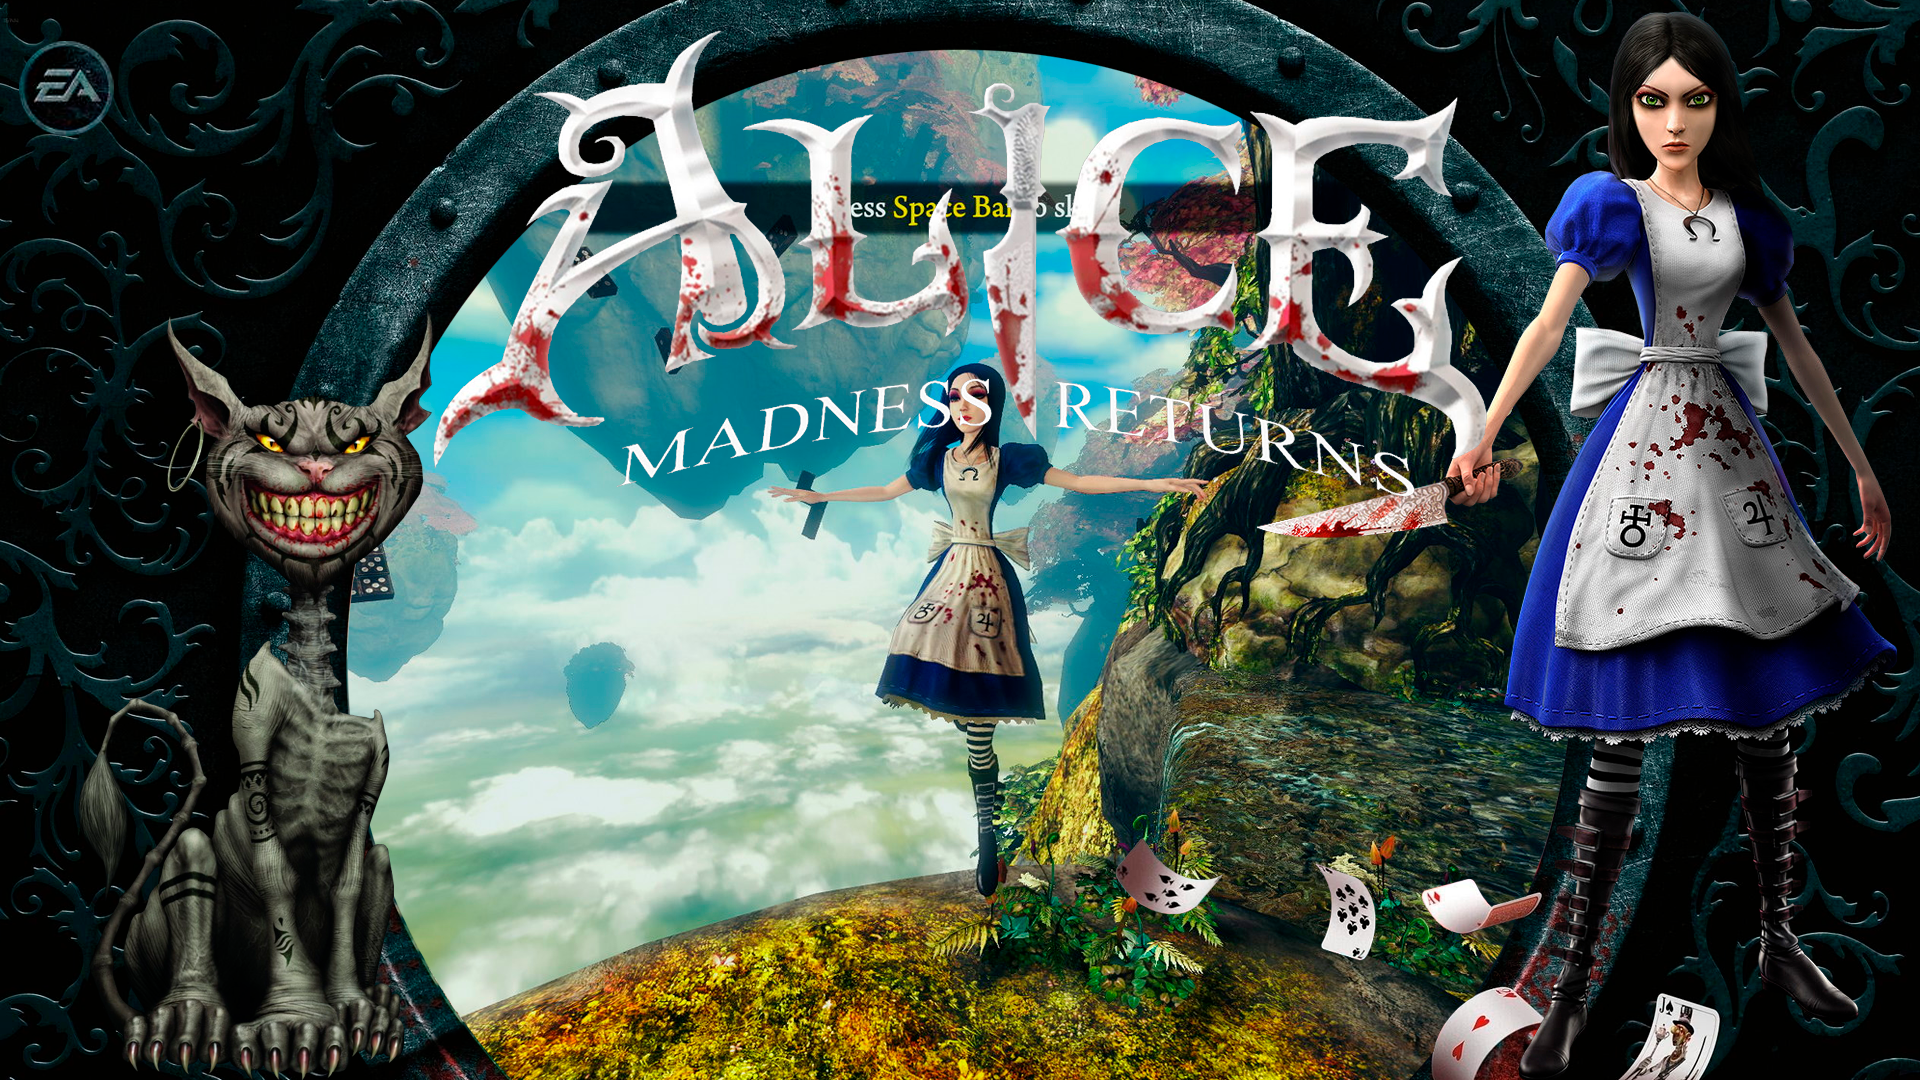 Как играть в компьютерные игры с алисой. Алиса American MCGEE Madness Returns. Алиса Элис Медиум ретурн.